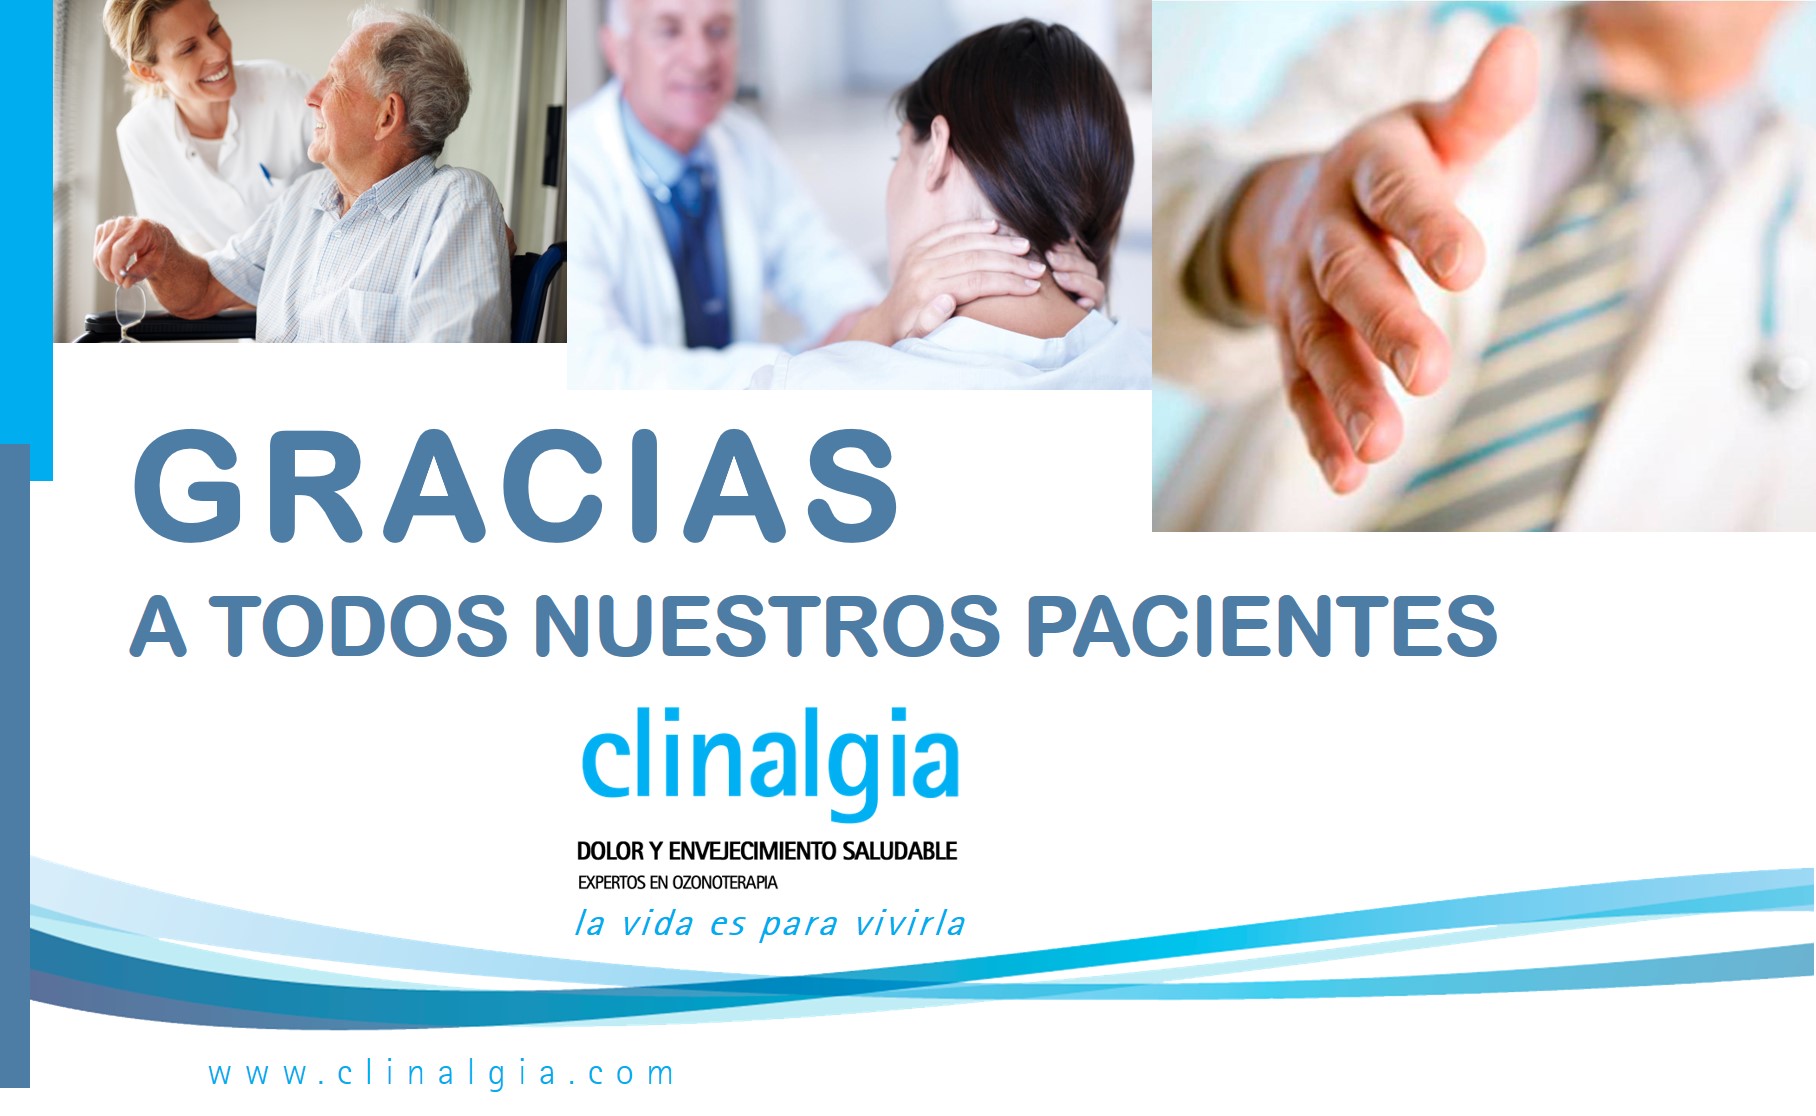 Gracias a todos nuestros pacientes. Clinalgia, porque la vida es para vivirla.